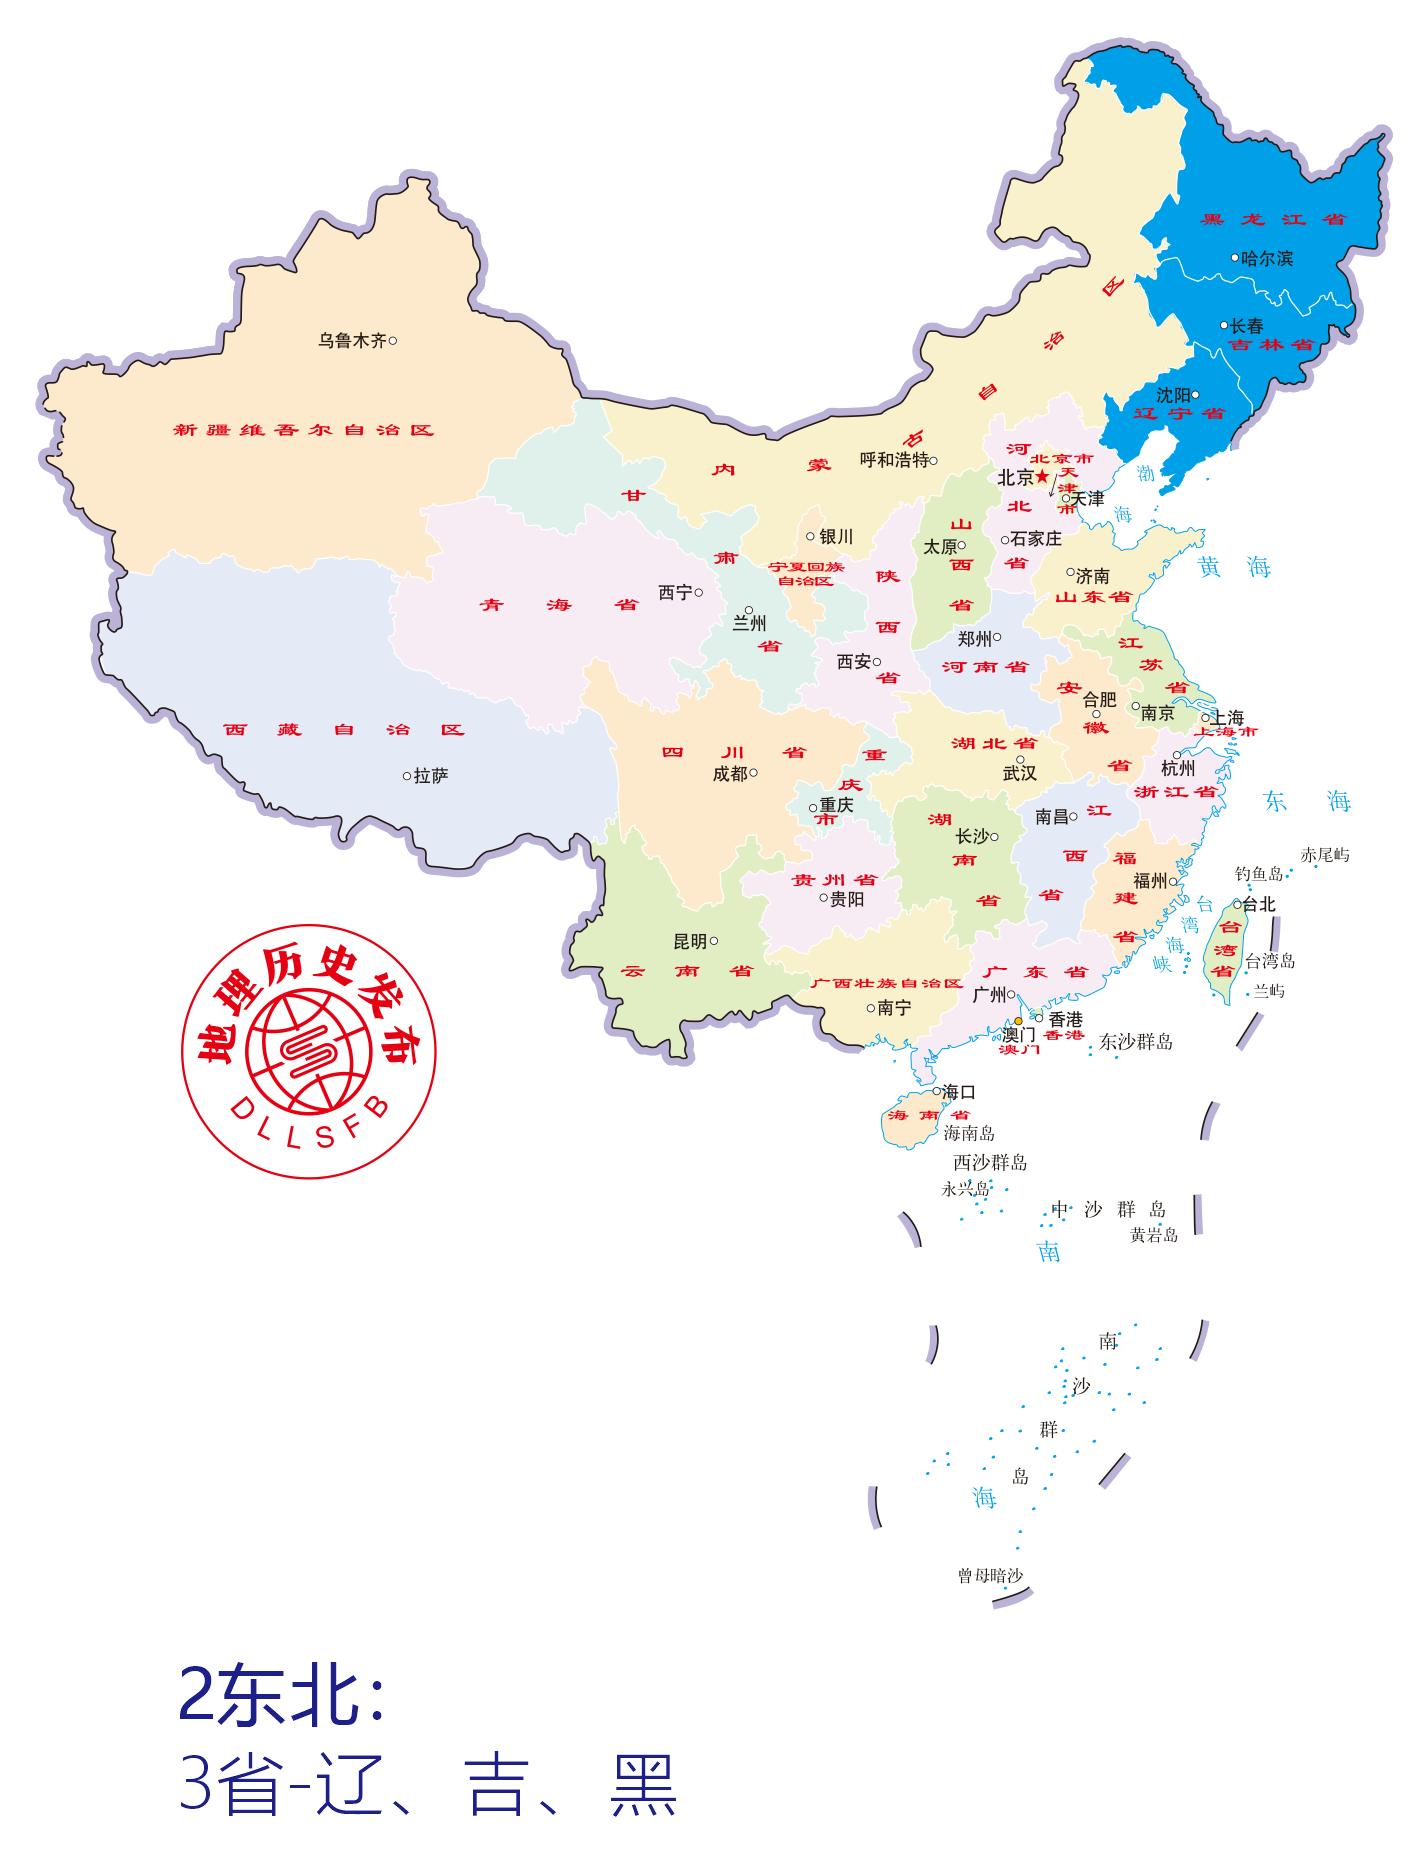 中国行政区划等级、数量、代码及城市分类